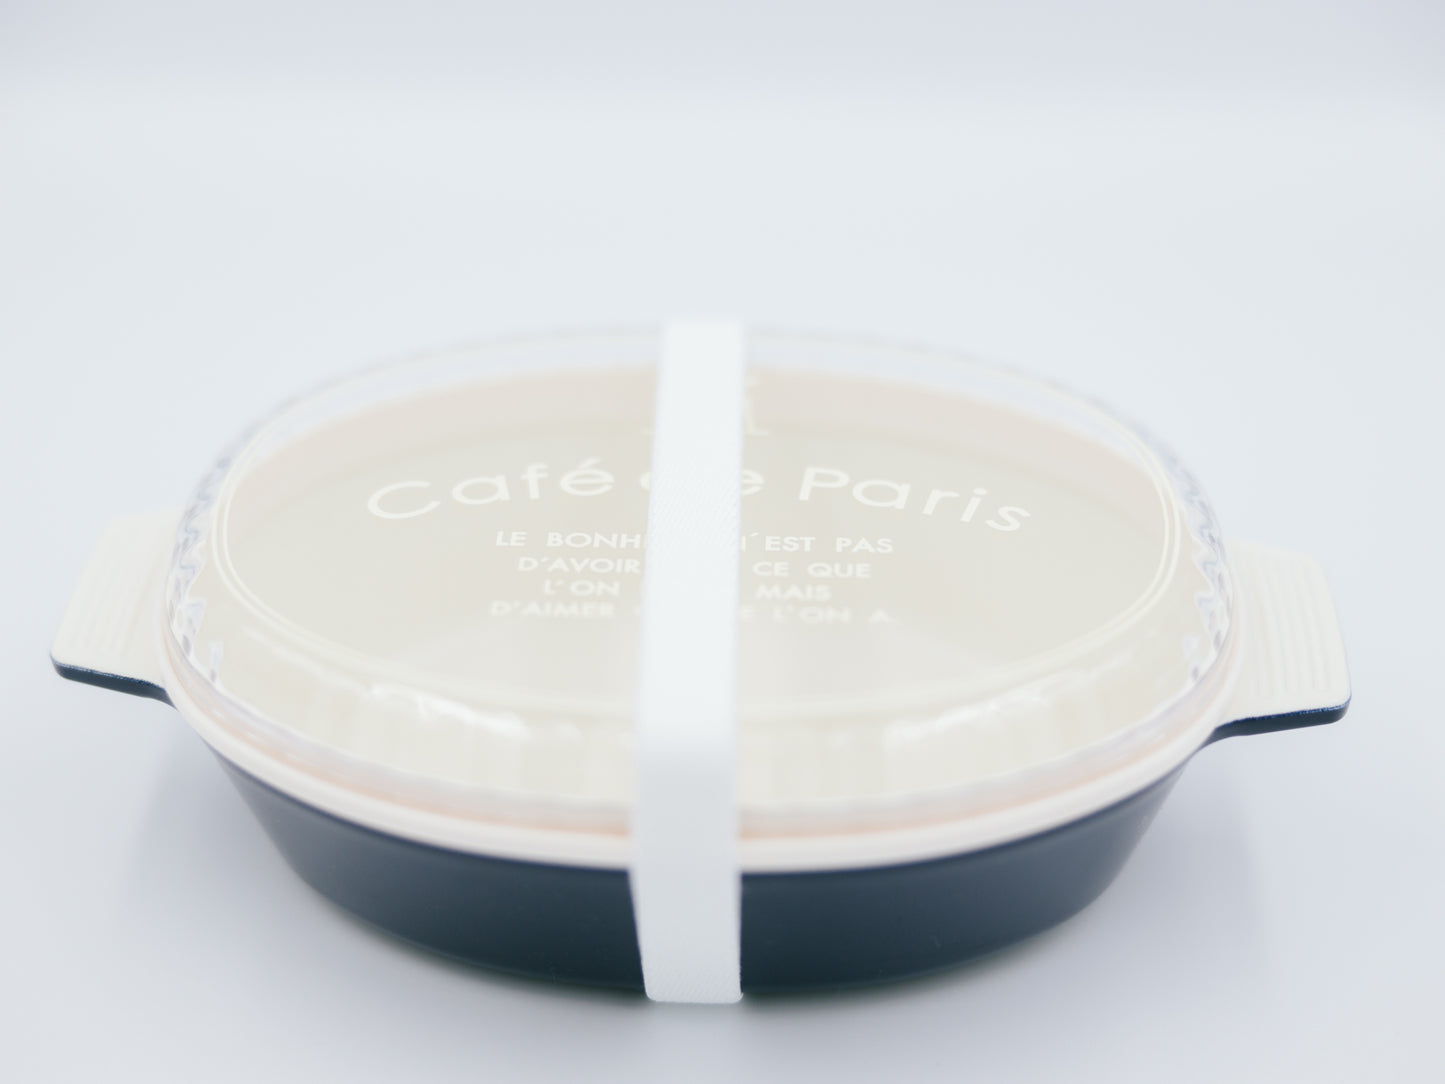 Lonchera de platos Café de Paris | Armada 